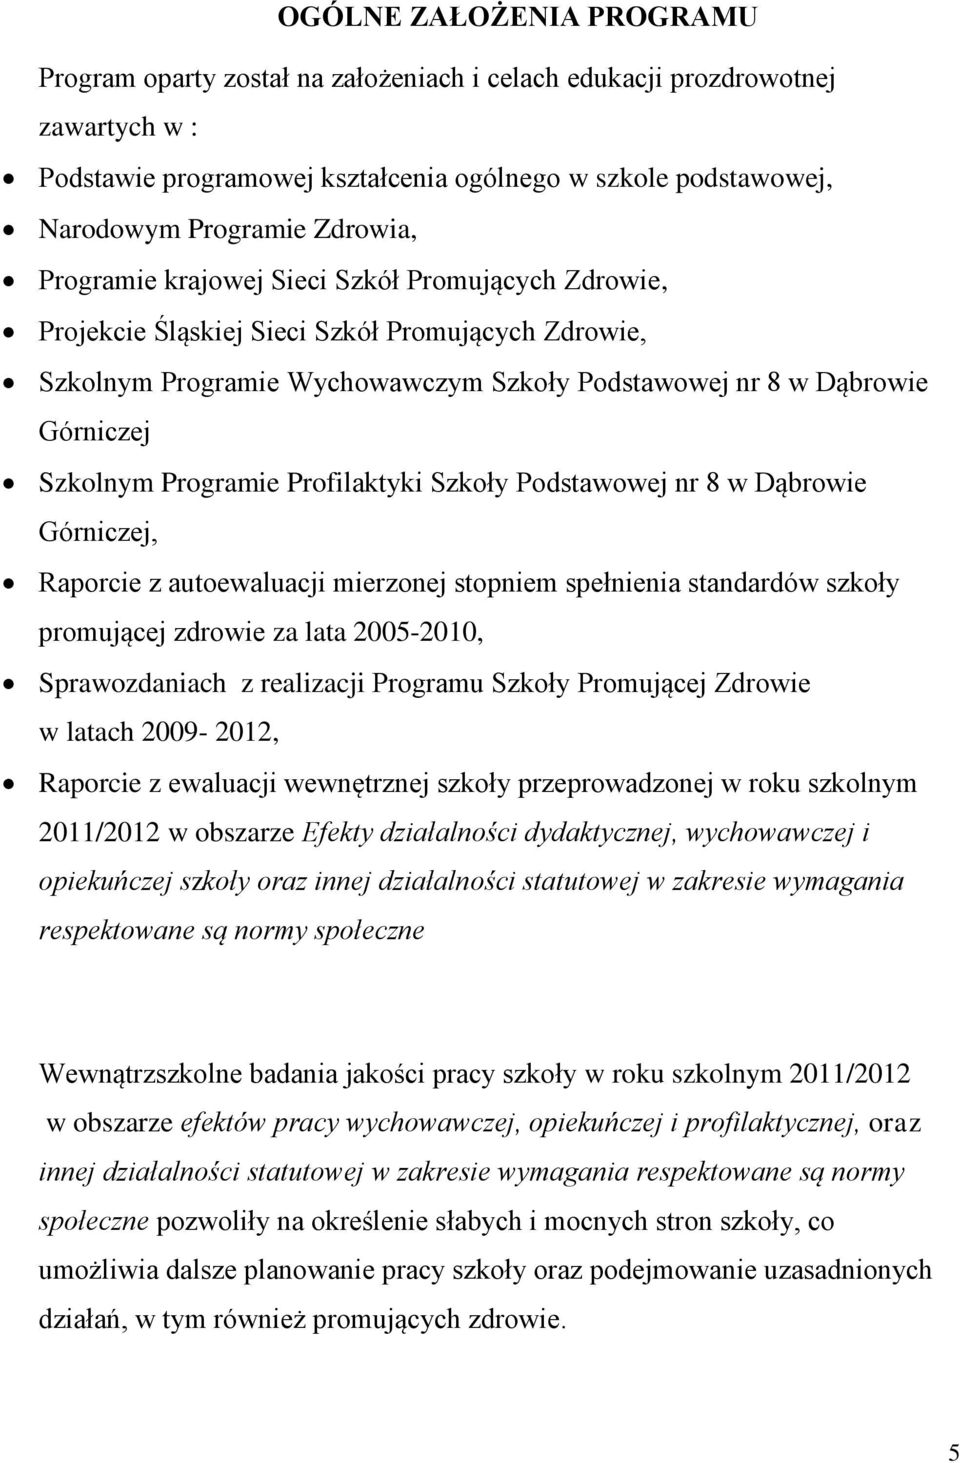 Programie Profilaktyki Szkoły Podstawowej nr 8 w Dąbrowie Górniczej, Raporcie z autoewaluacji mierzonej stopniem spełnienia standardów szkoły promującej zdrowie za lata 2005-2010, Sprawozdaniach z